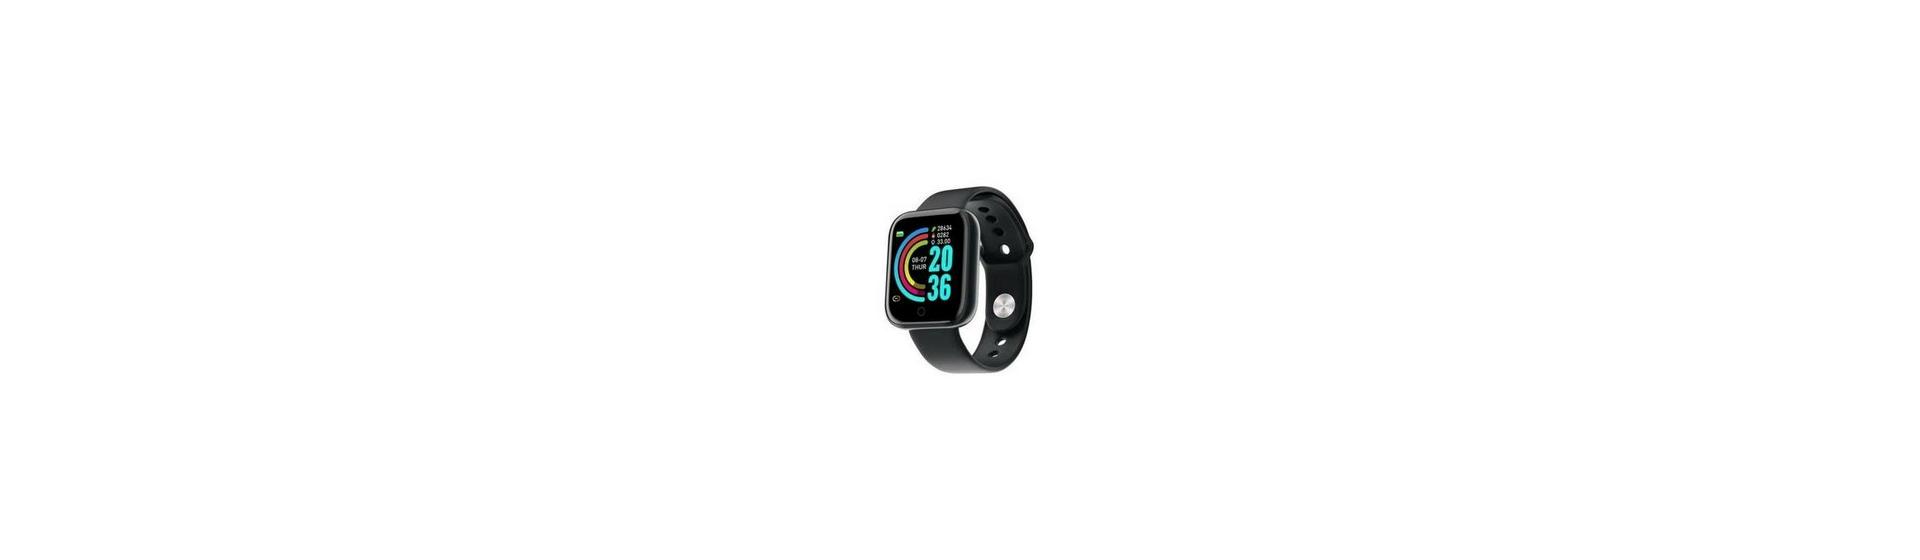 Promoção Imperdível: Smartwatch Y68 D20 Bluetooth por apenas R$38,63*